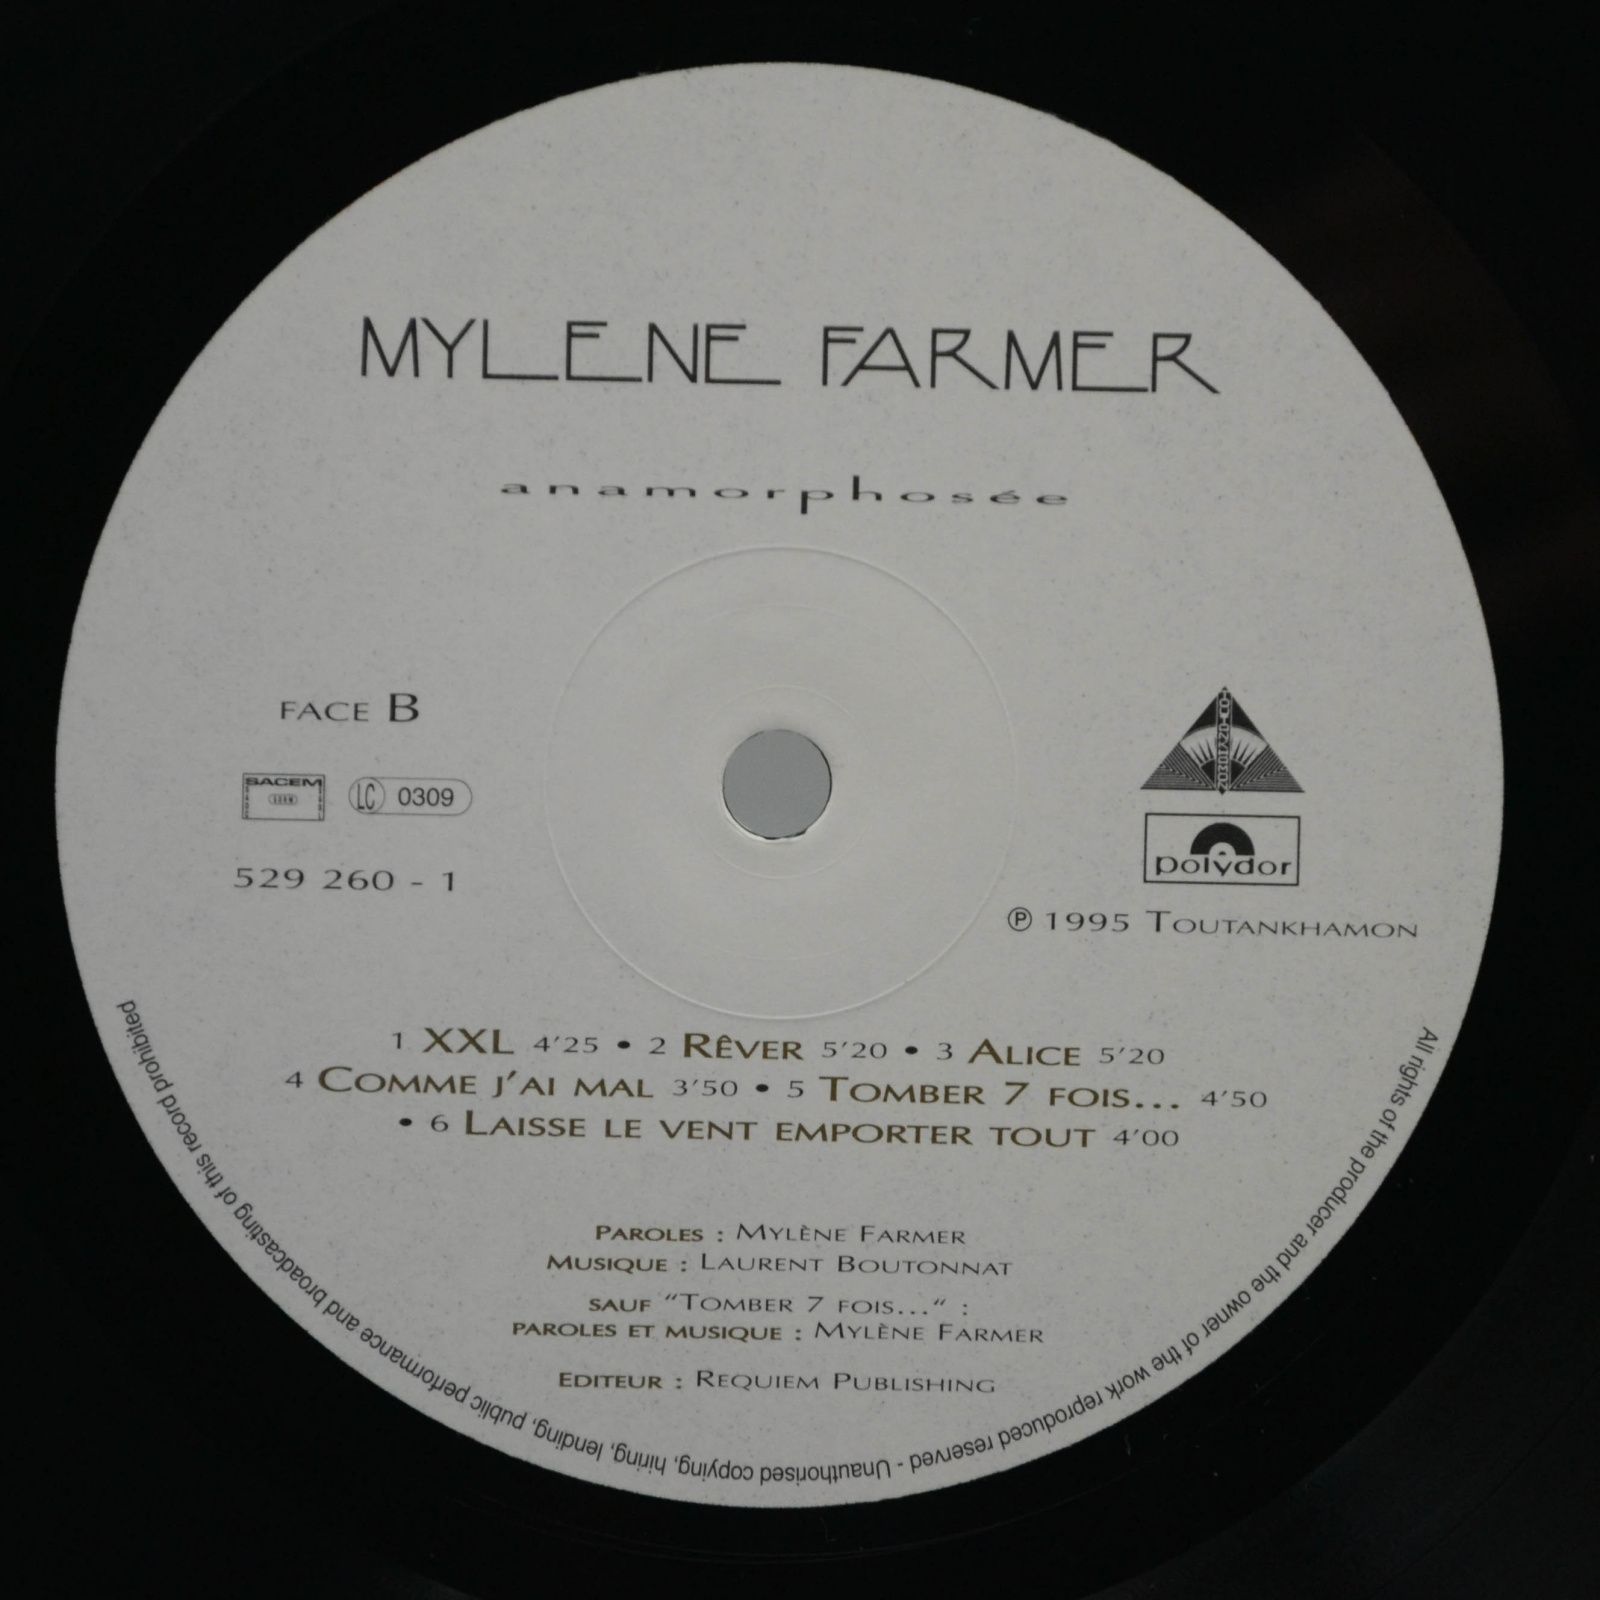 Mylene Farmer — Anamorphosée (1-st, France), 1995